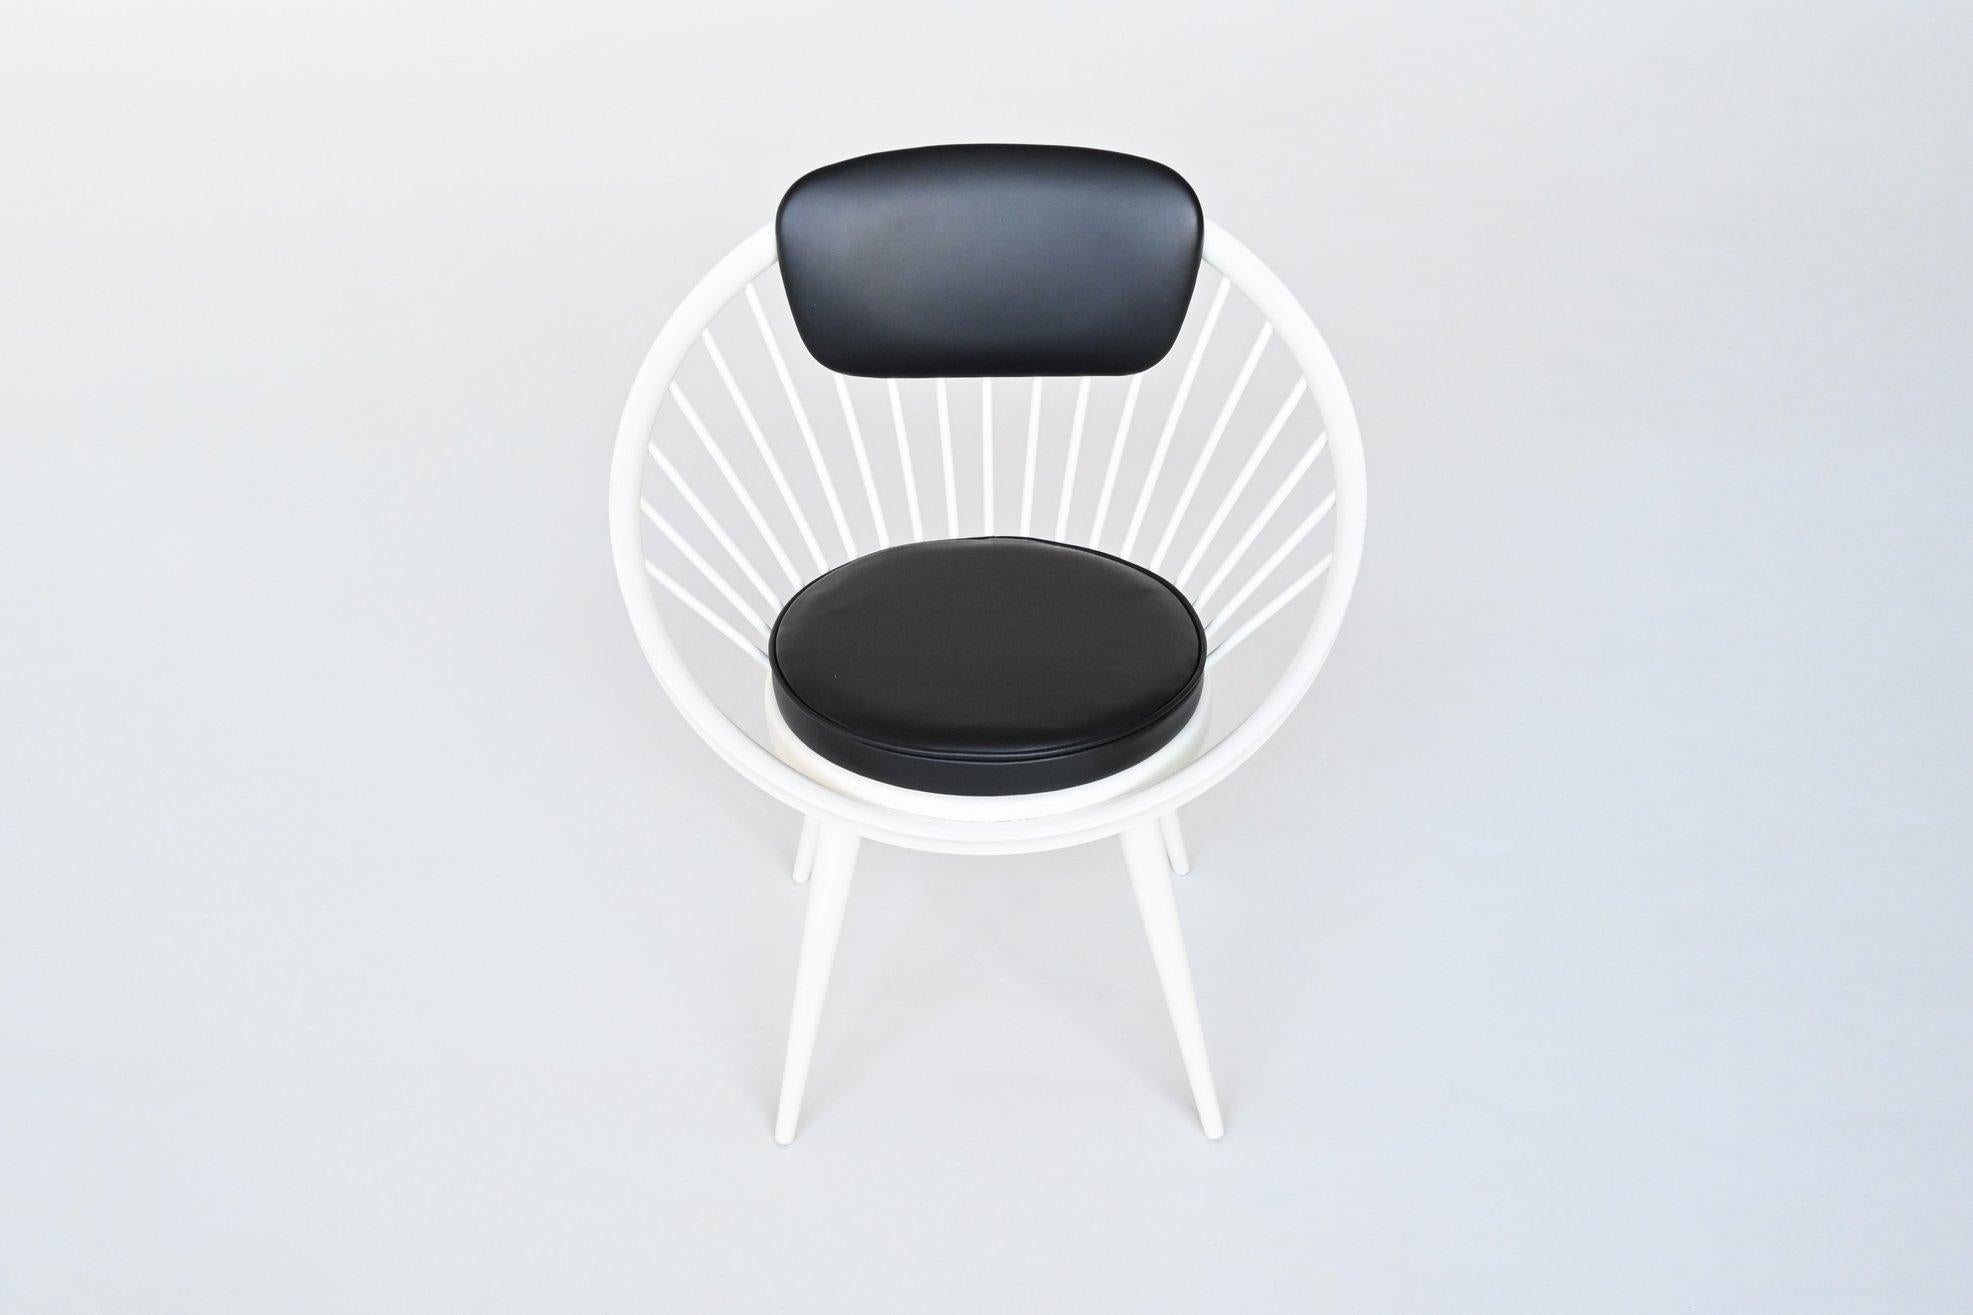 Schöner skulpturaler Sessel Modell Circle, entworfen von Yngve Ekström für Swedese, Schweden 1960. Er hat eine breite, elliptische Sitzfläche und eine elegant geschwungene, spindelförmige Rückenlehne auf vier spitz zulaufenden Beinen. Das macht